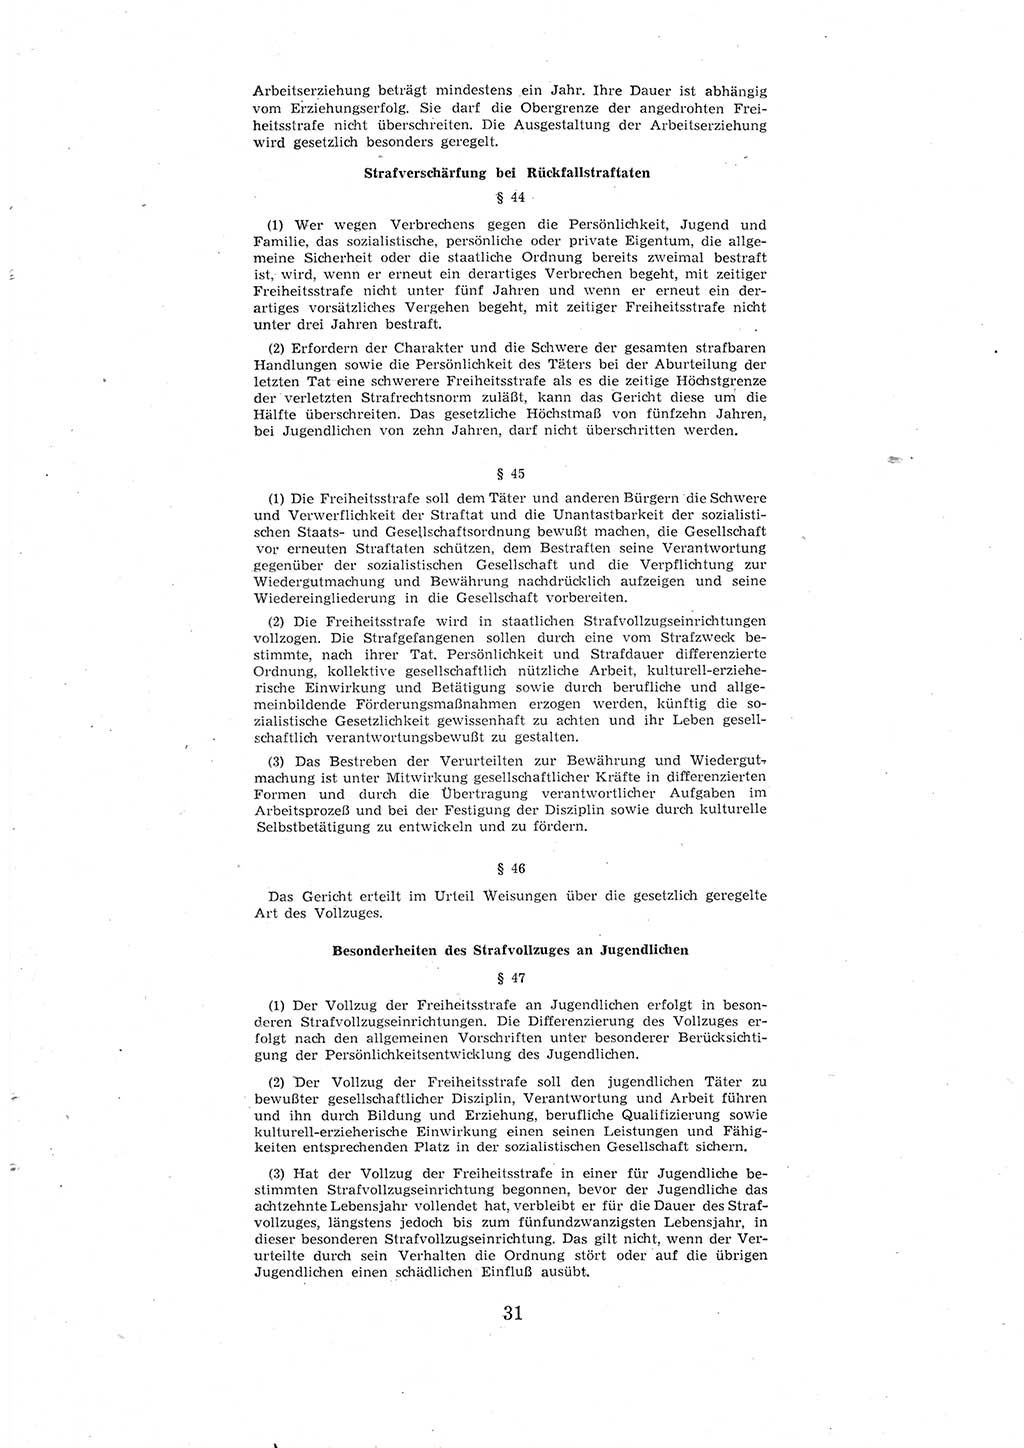 Entwurf des Strafgesetzbuches (StGB) der Deutschen Demokratischen Republik (DDR) 1967, Seite 31 (Entw. StGB DDR 1967, S. 31)